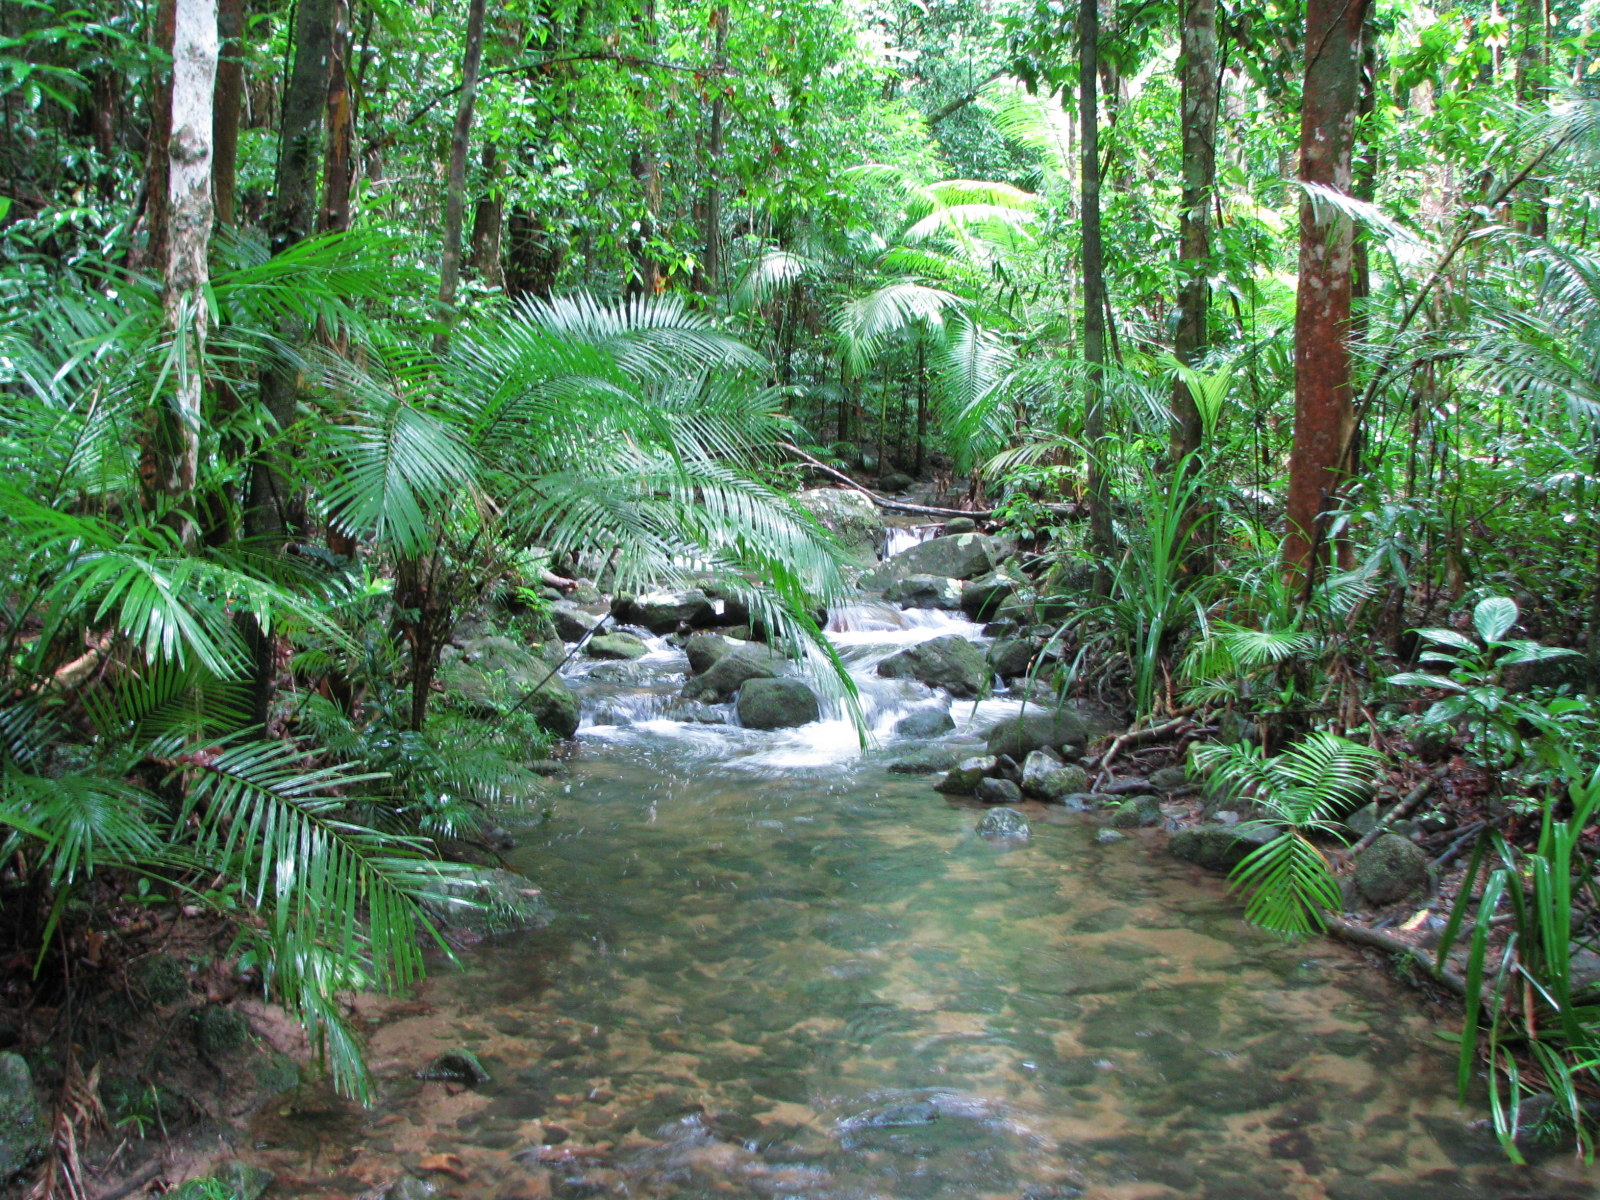 Природная зона влажные экваториальные тропические леса